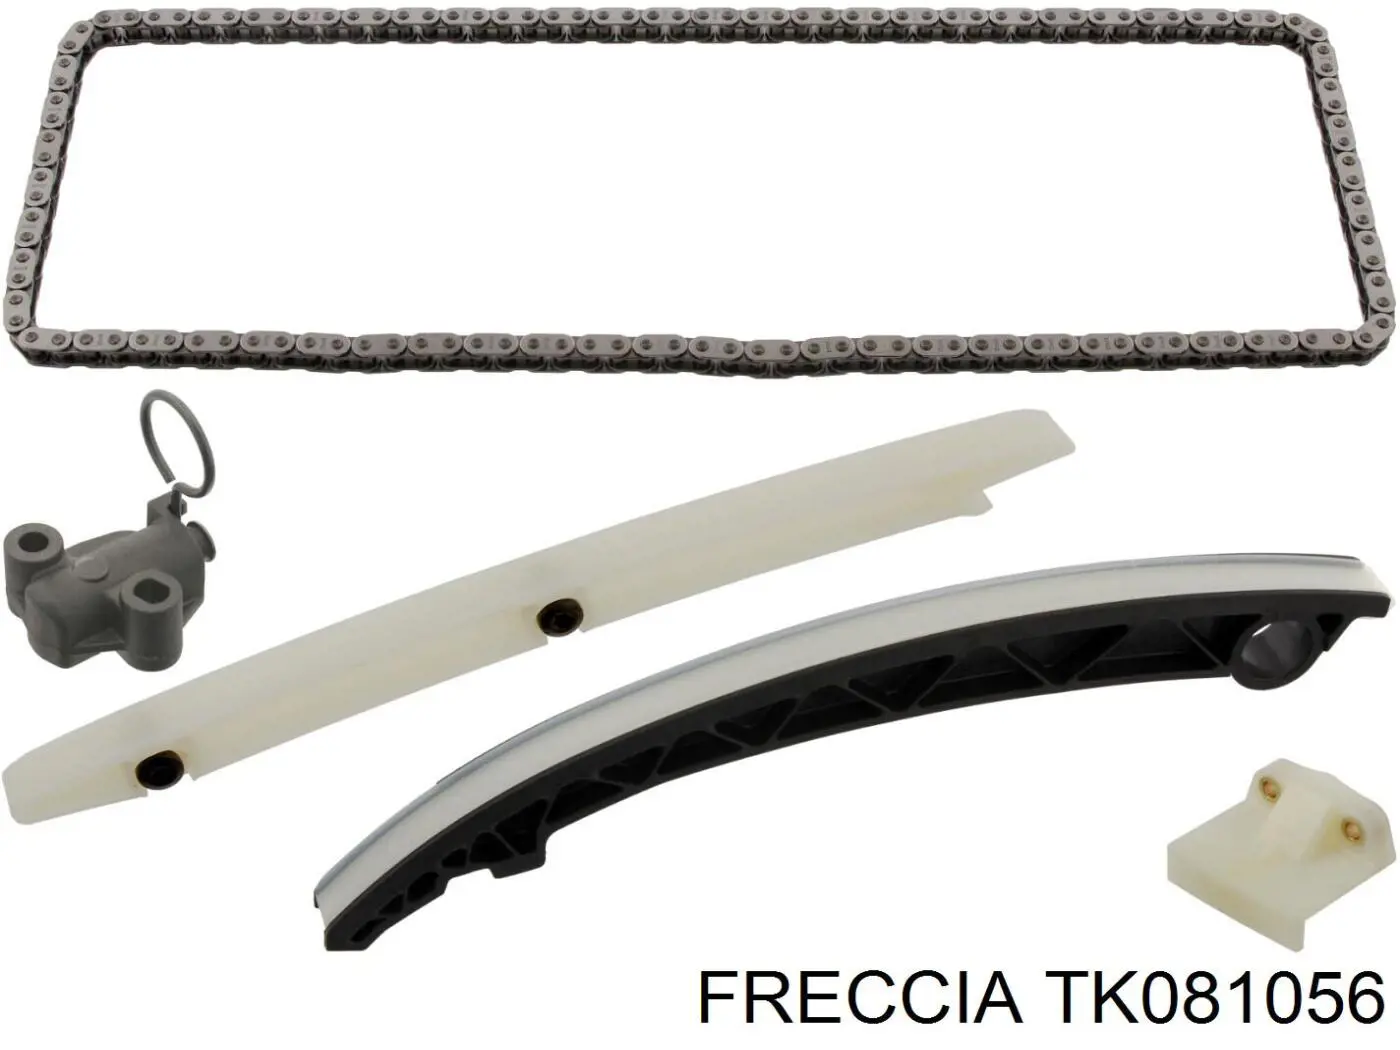 TK08-1056 Freccia cadeia do mecanismo de distribuição de gás, kit